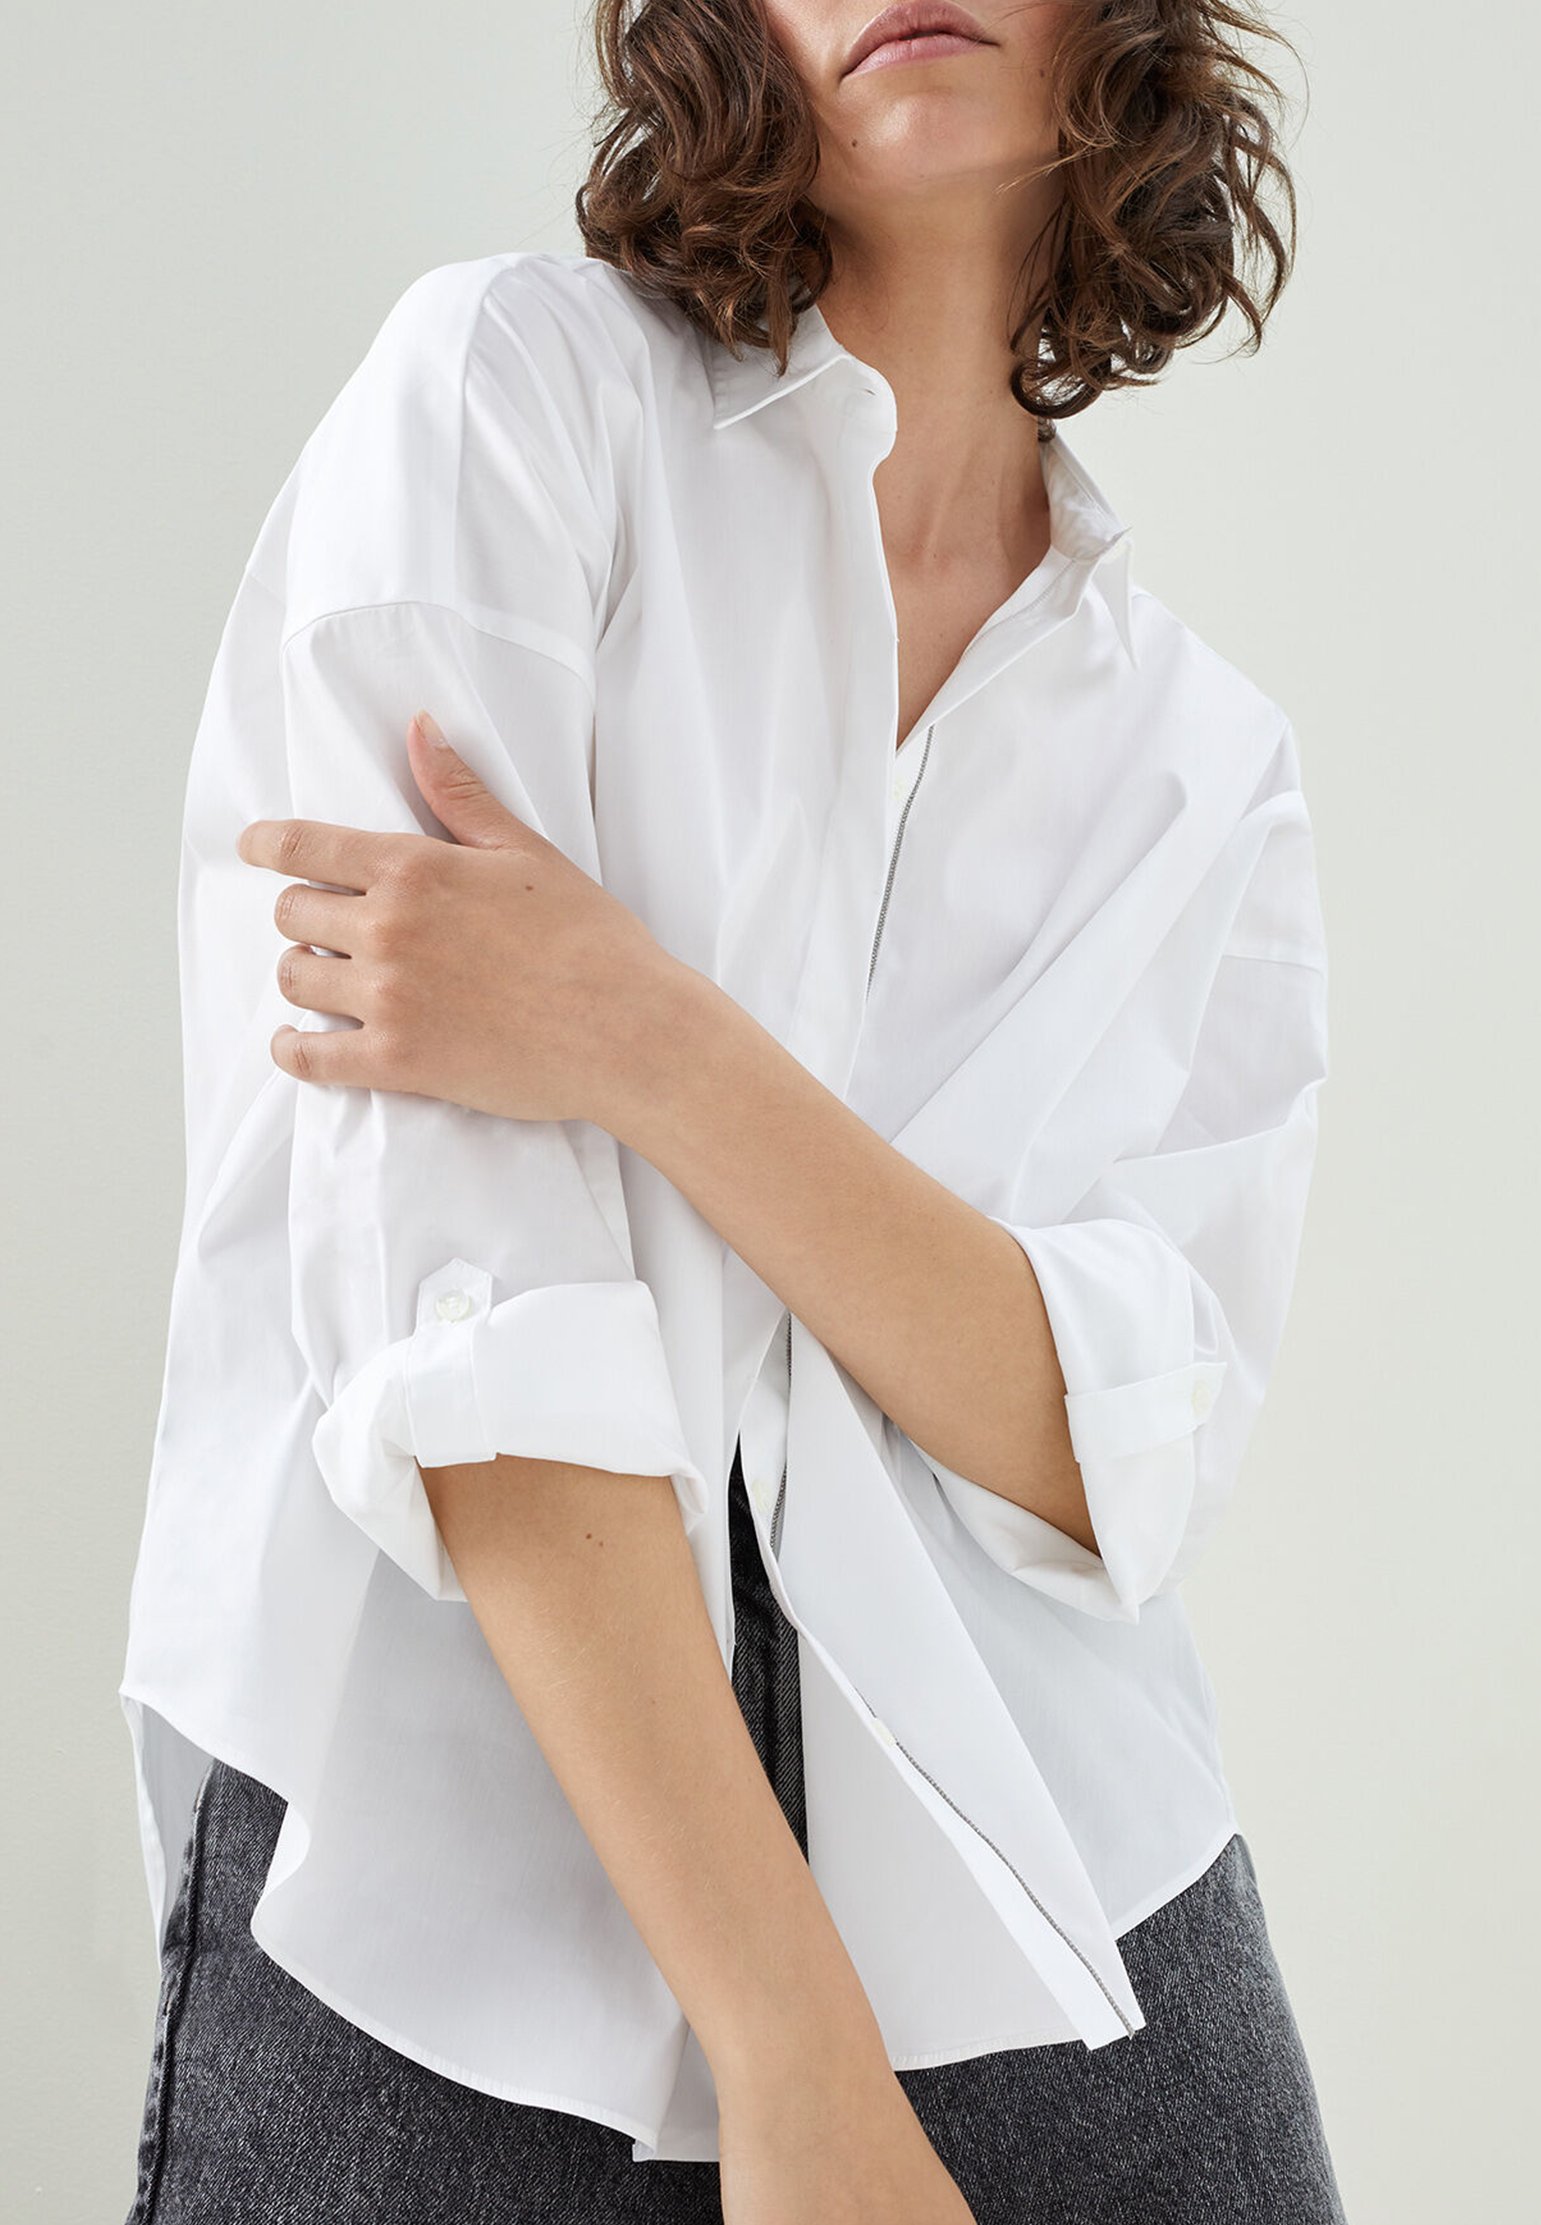 Shirt BRUNELLO CUCINELLI Color: white (Code: 898) in online store Allure